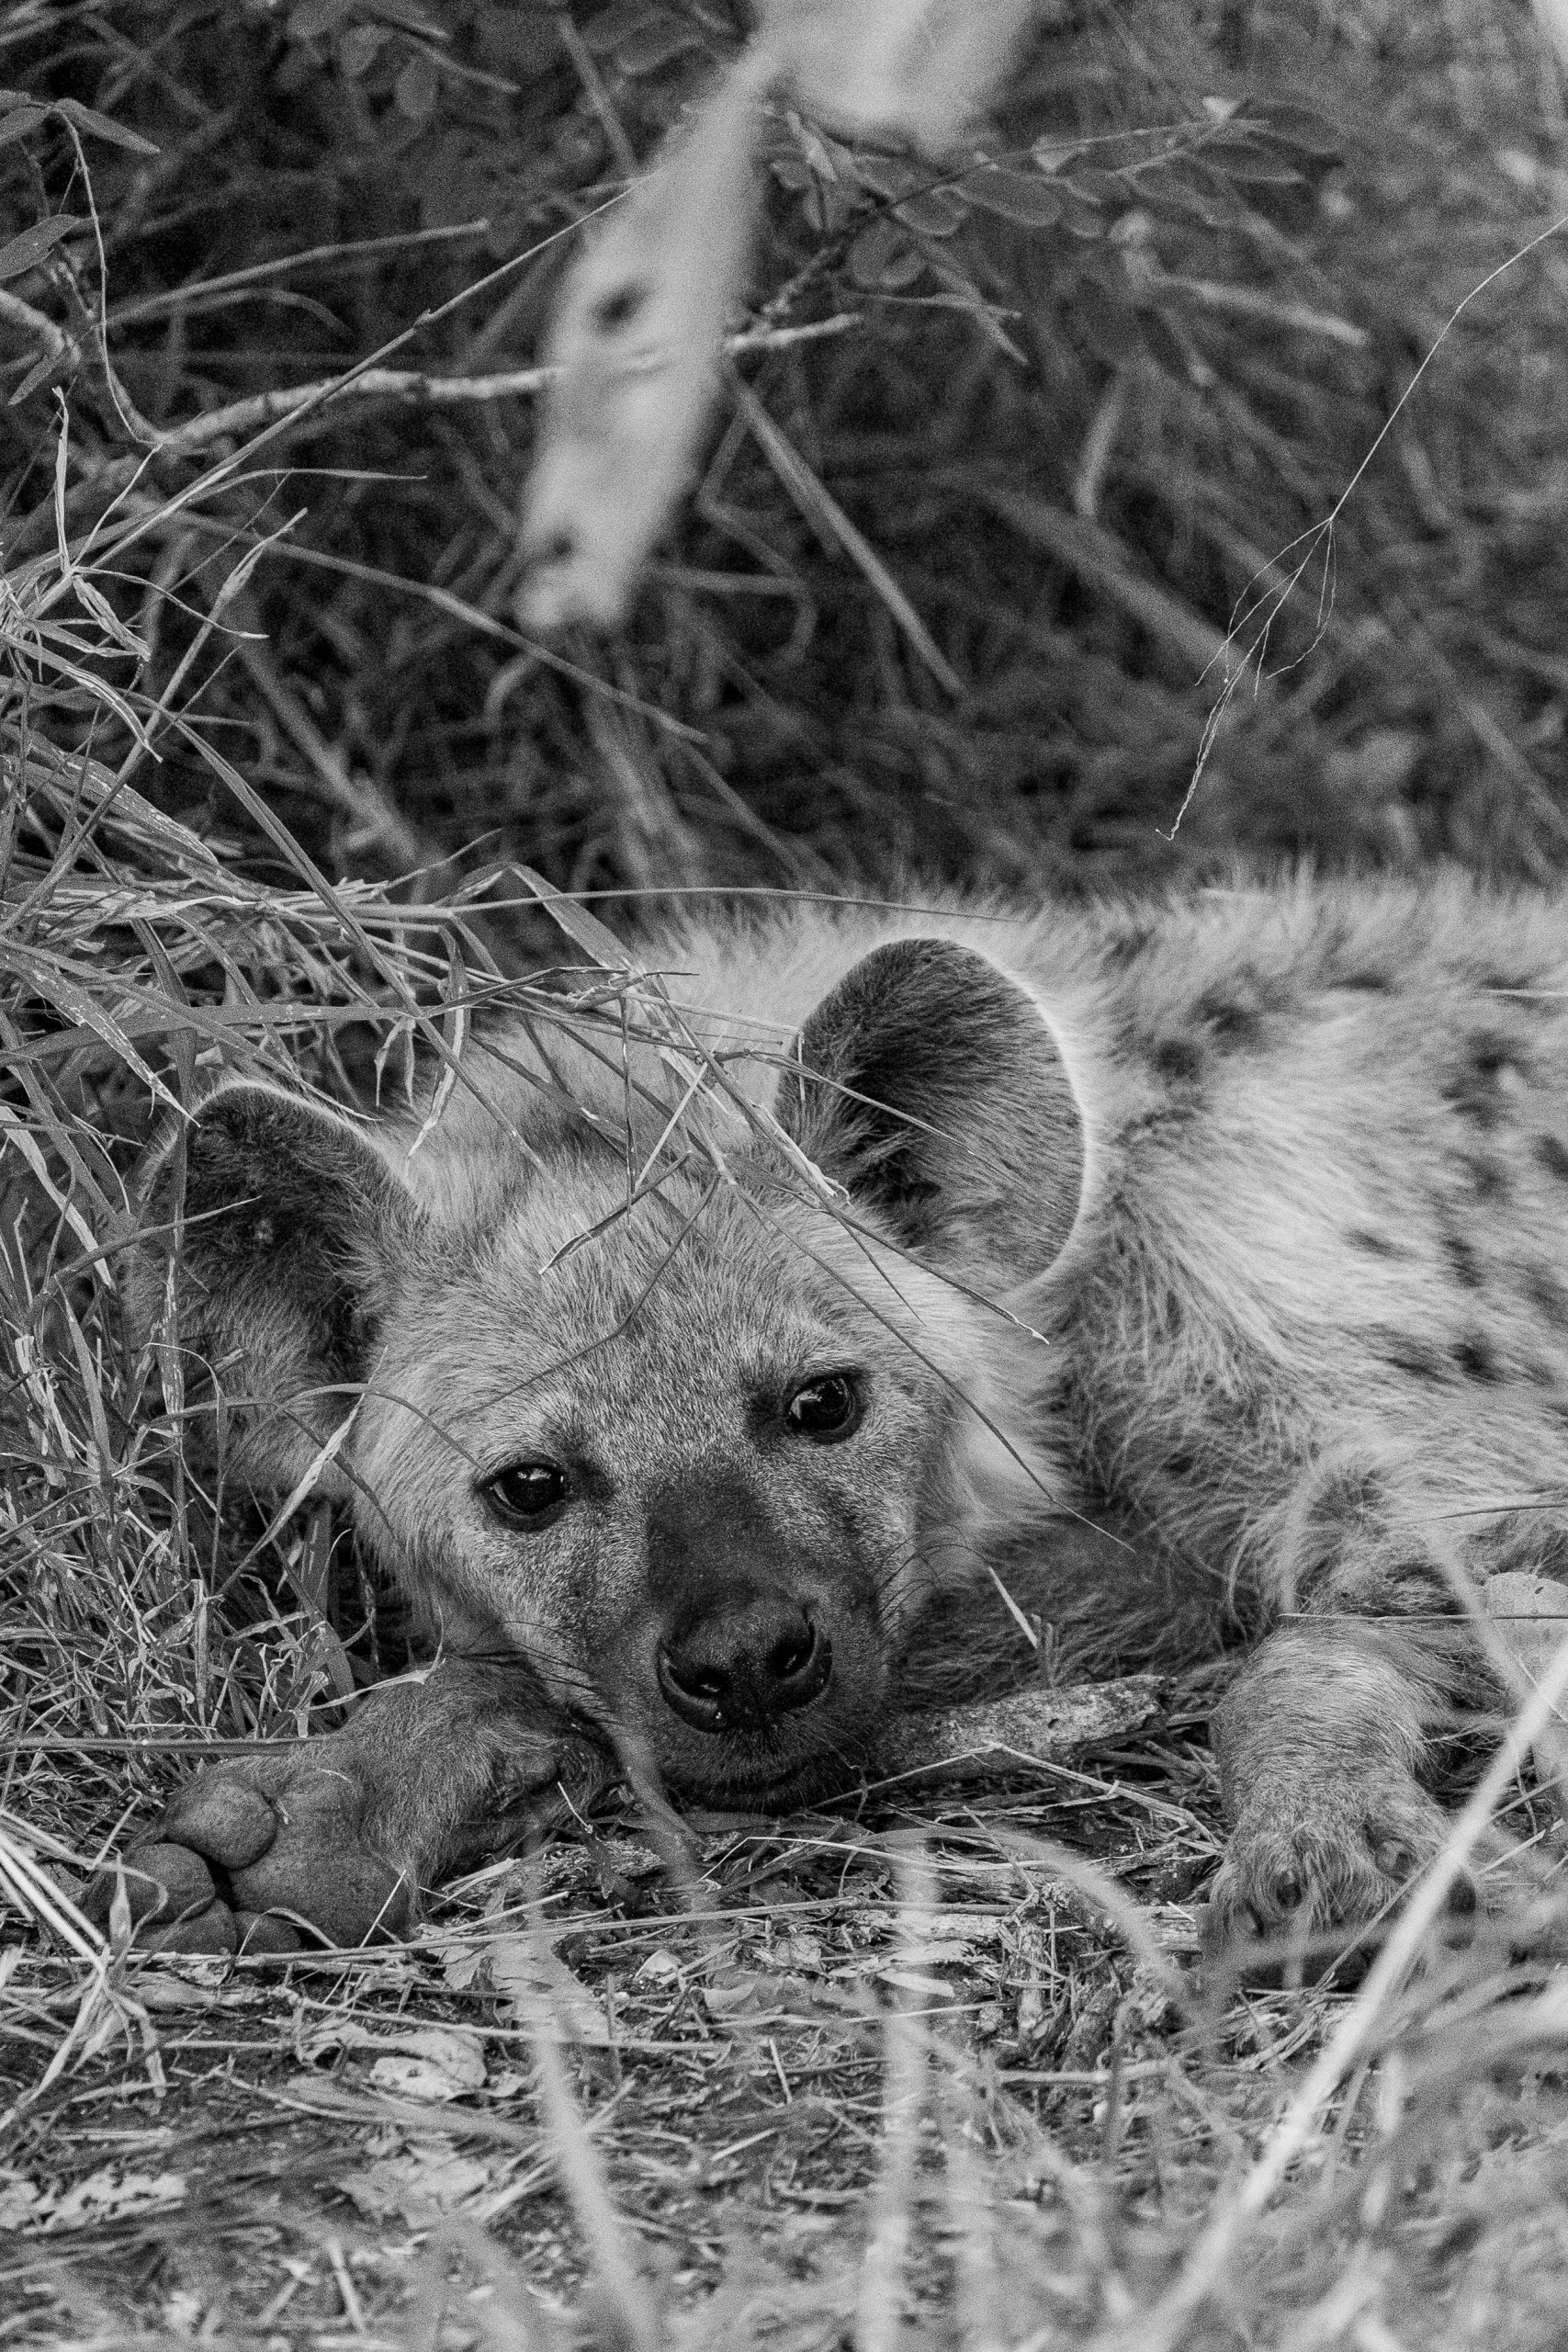 Resting hyena